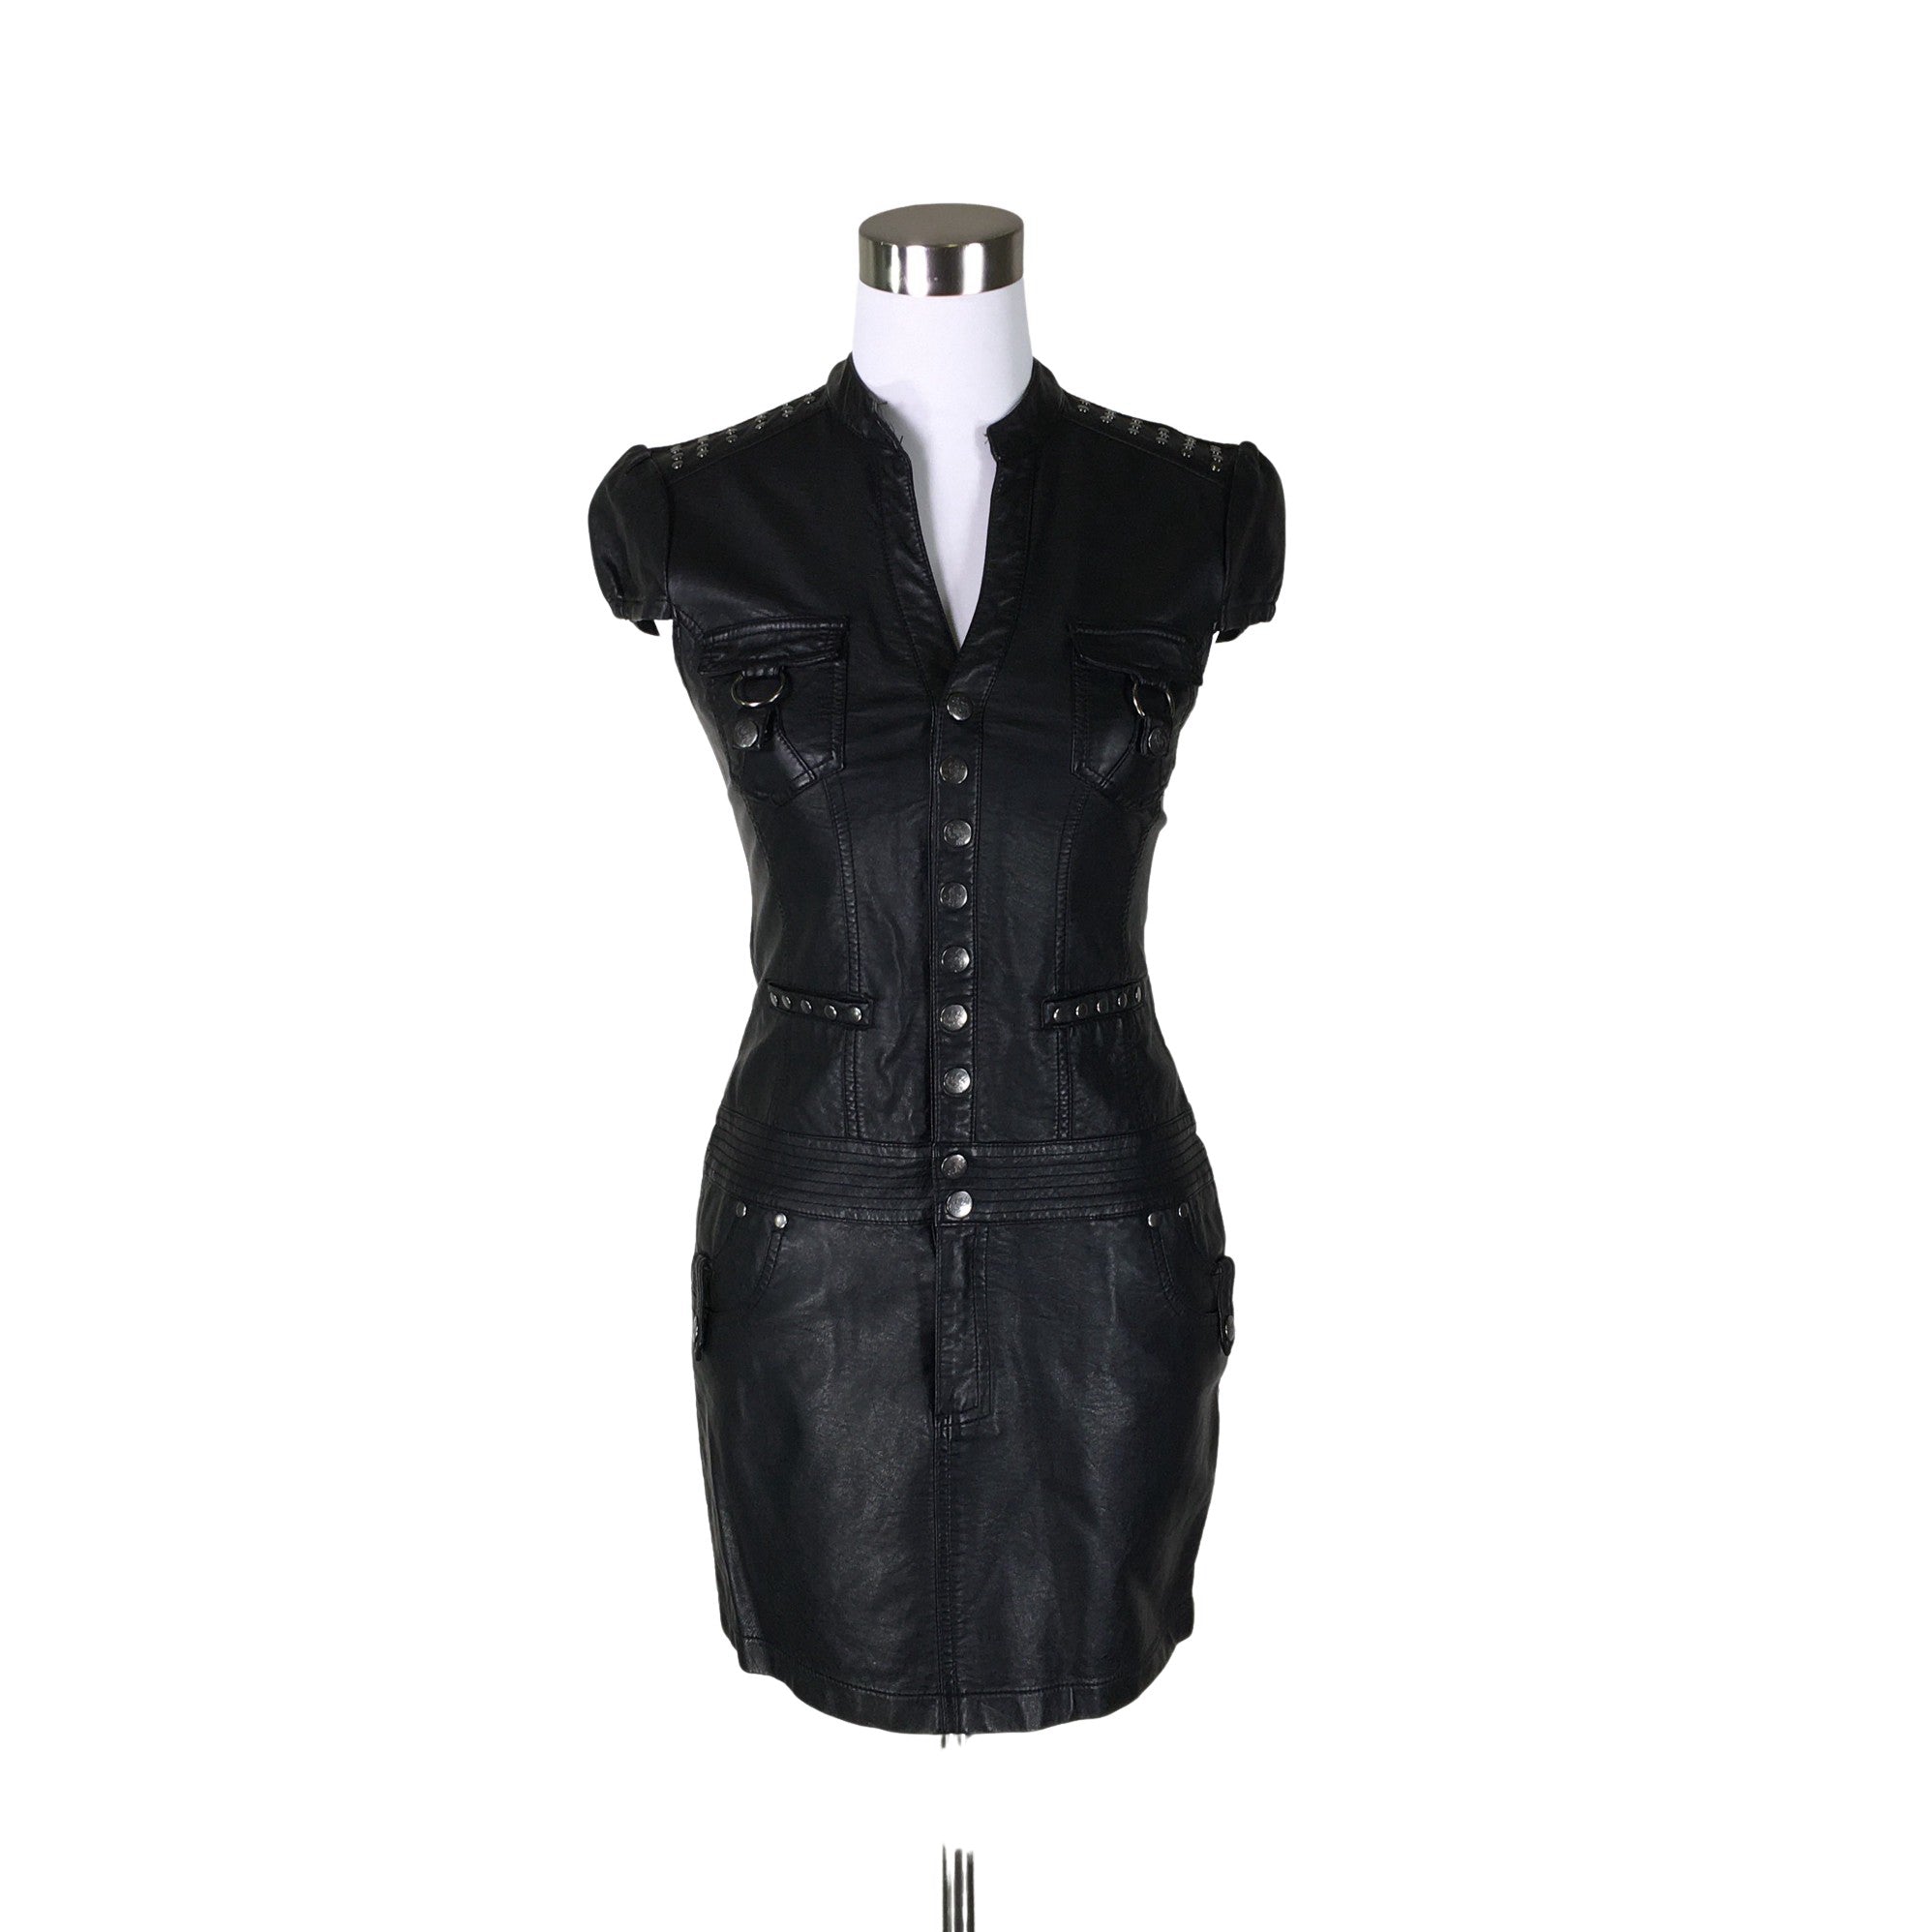 Women's Derek Heart Dress, size 38 (Black)